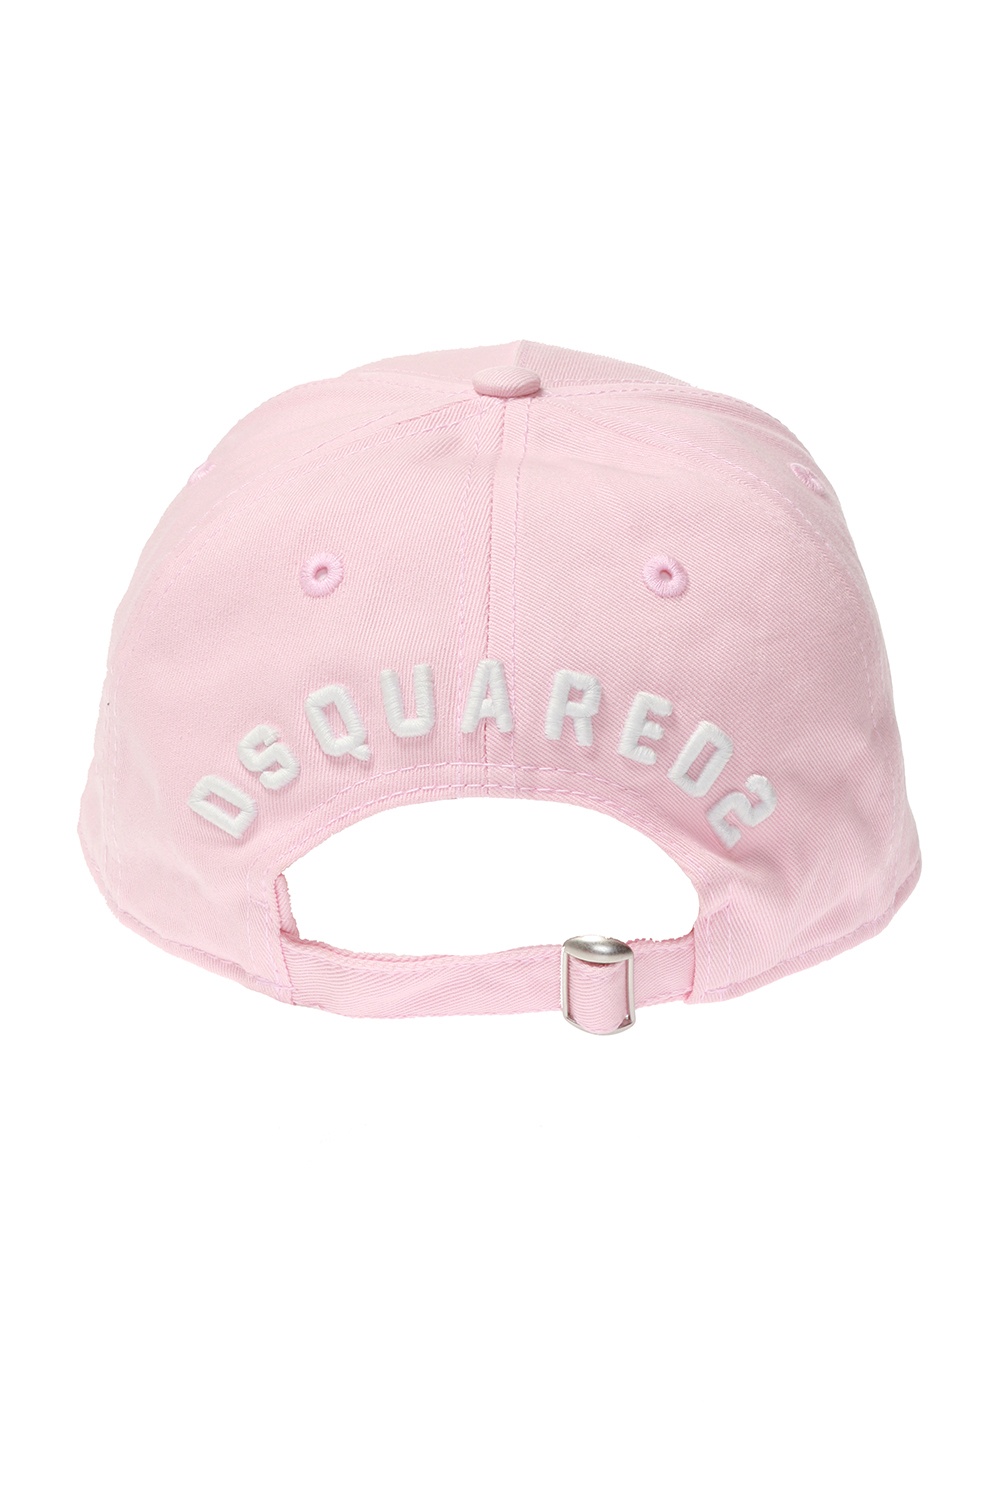 dsquared2 distressed cap